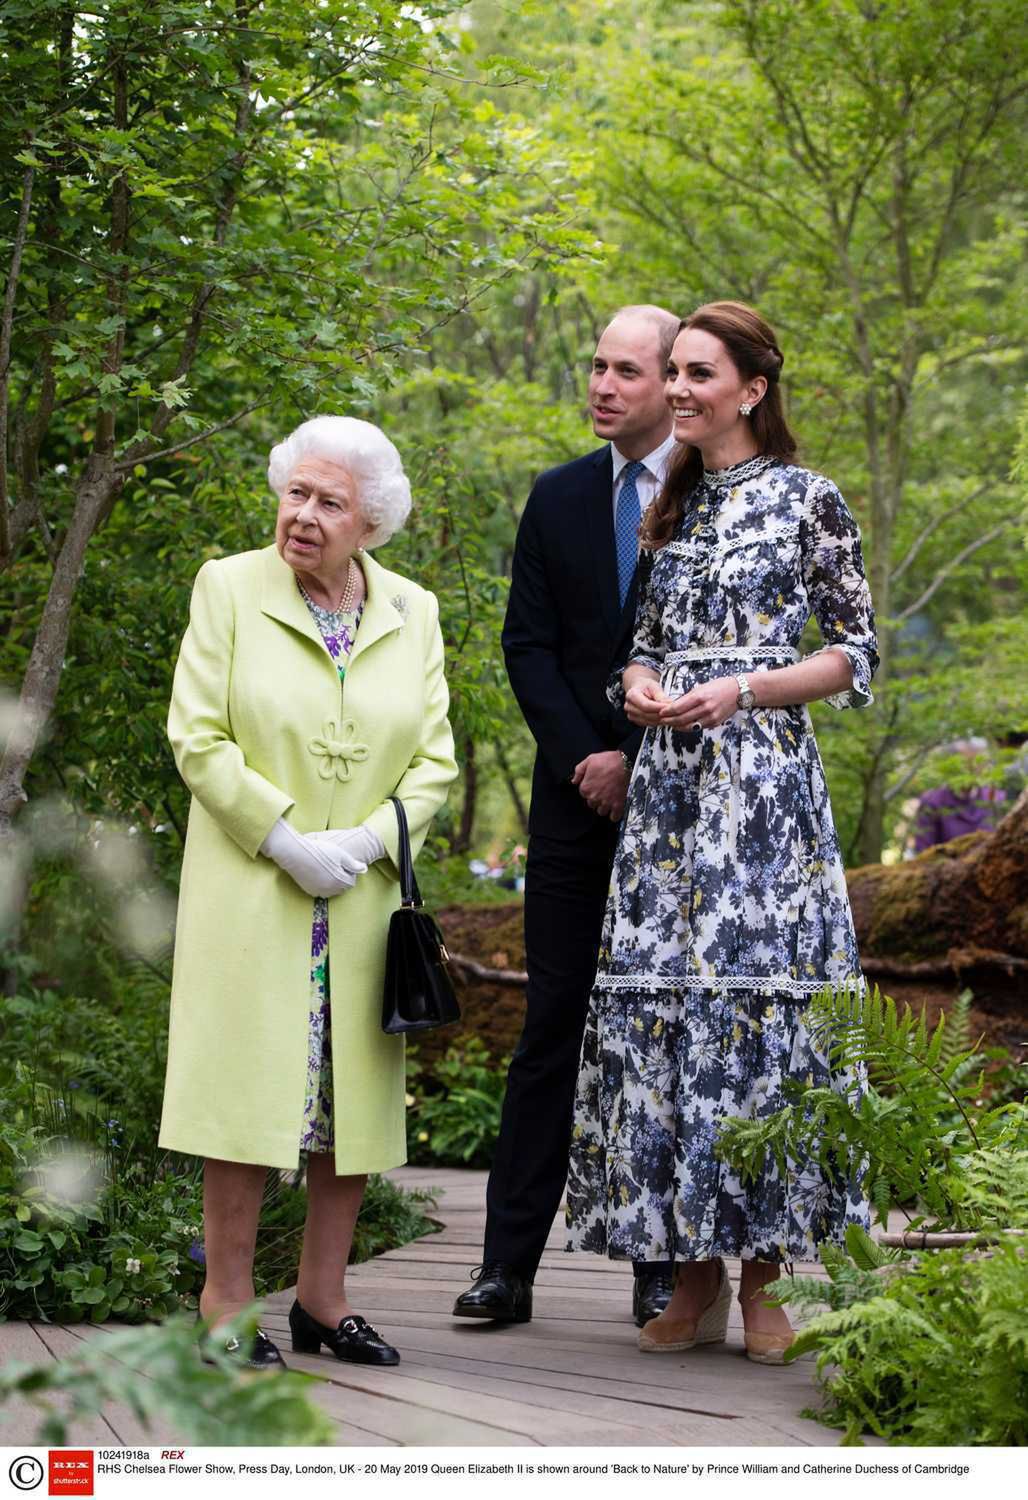 Księżna Kate i książę William oprowadzili królową Elżbietę II po ogrodach